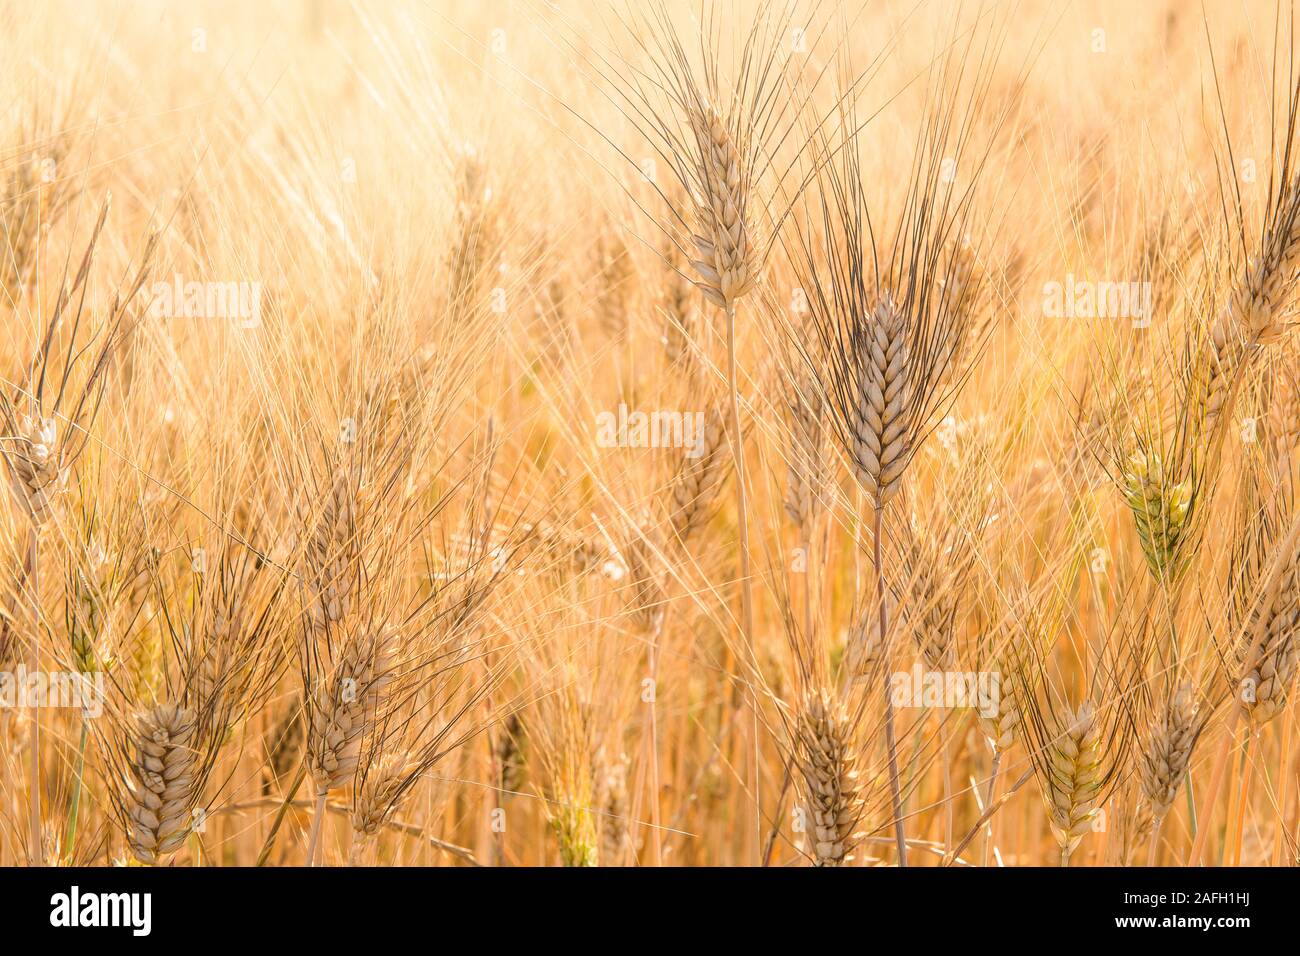 Full frame image of golden grain wheat plants ripe for harvesting Stock Photo